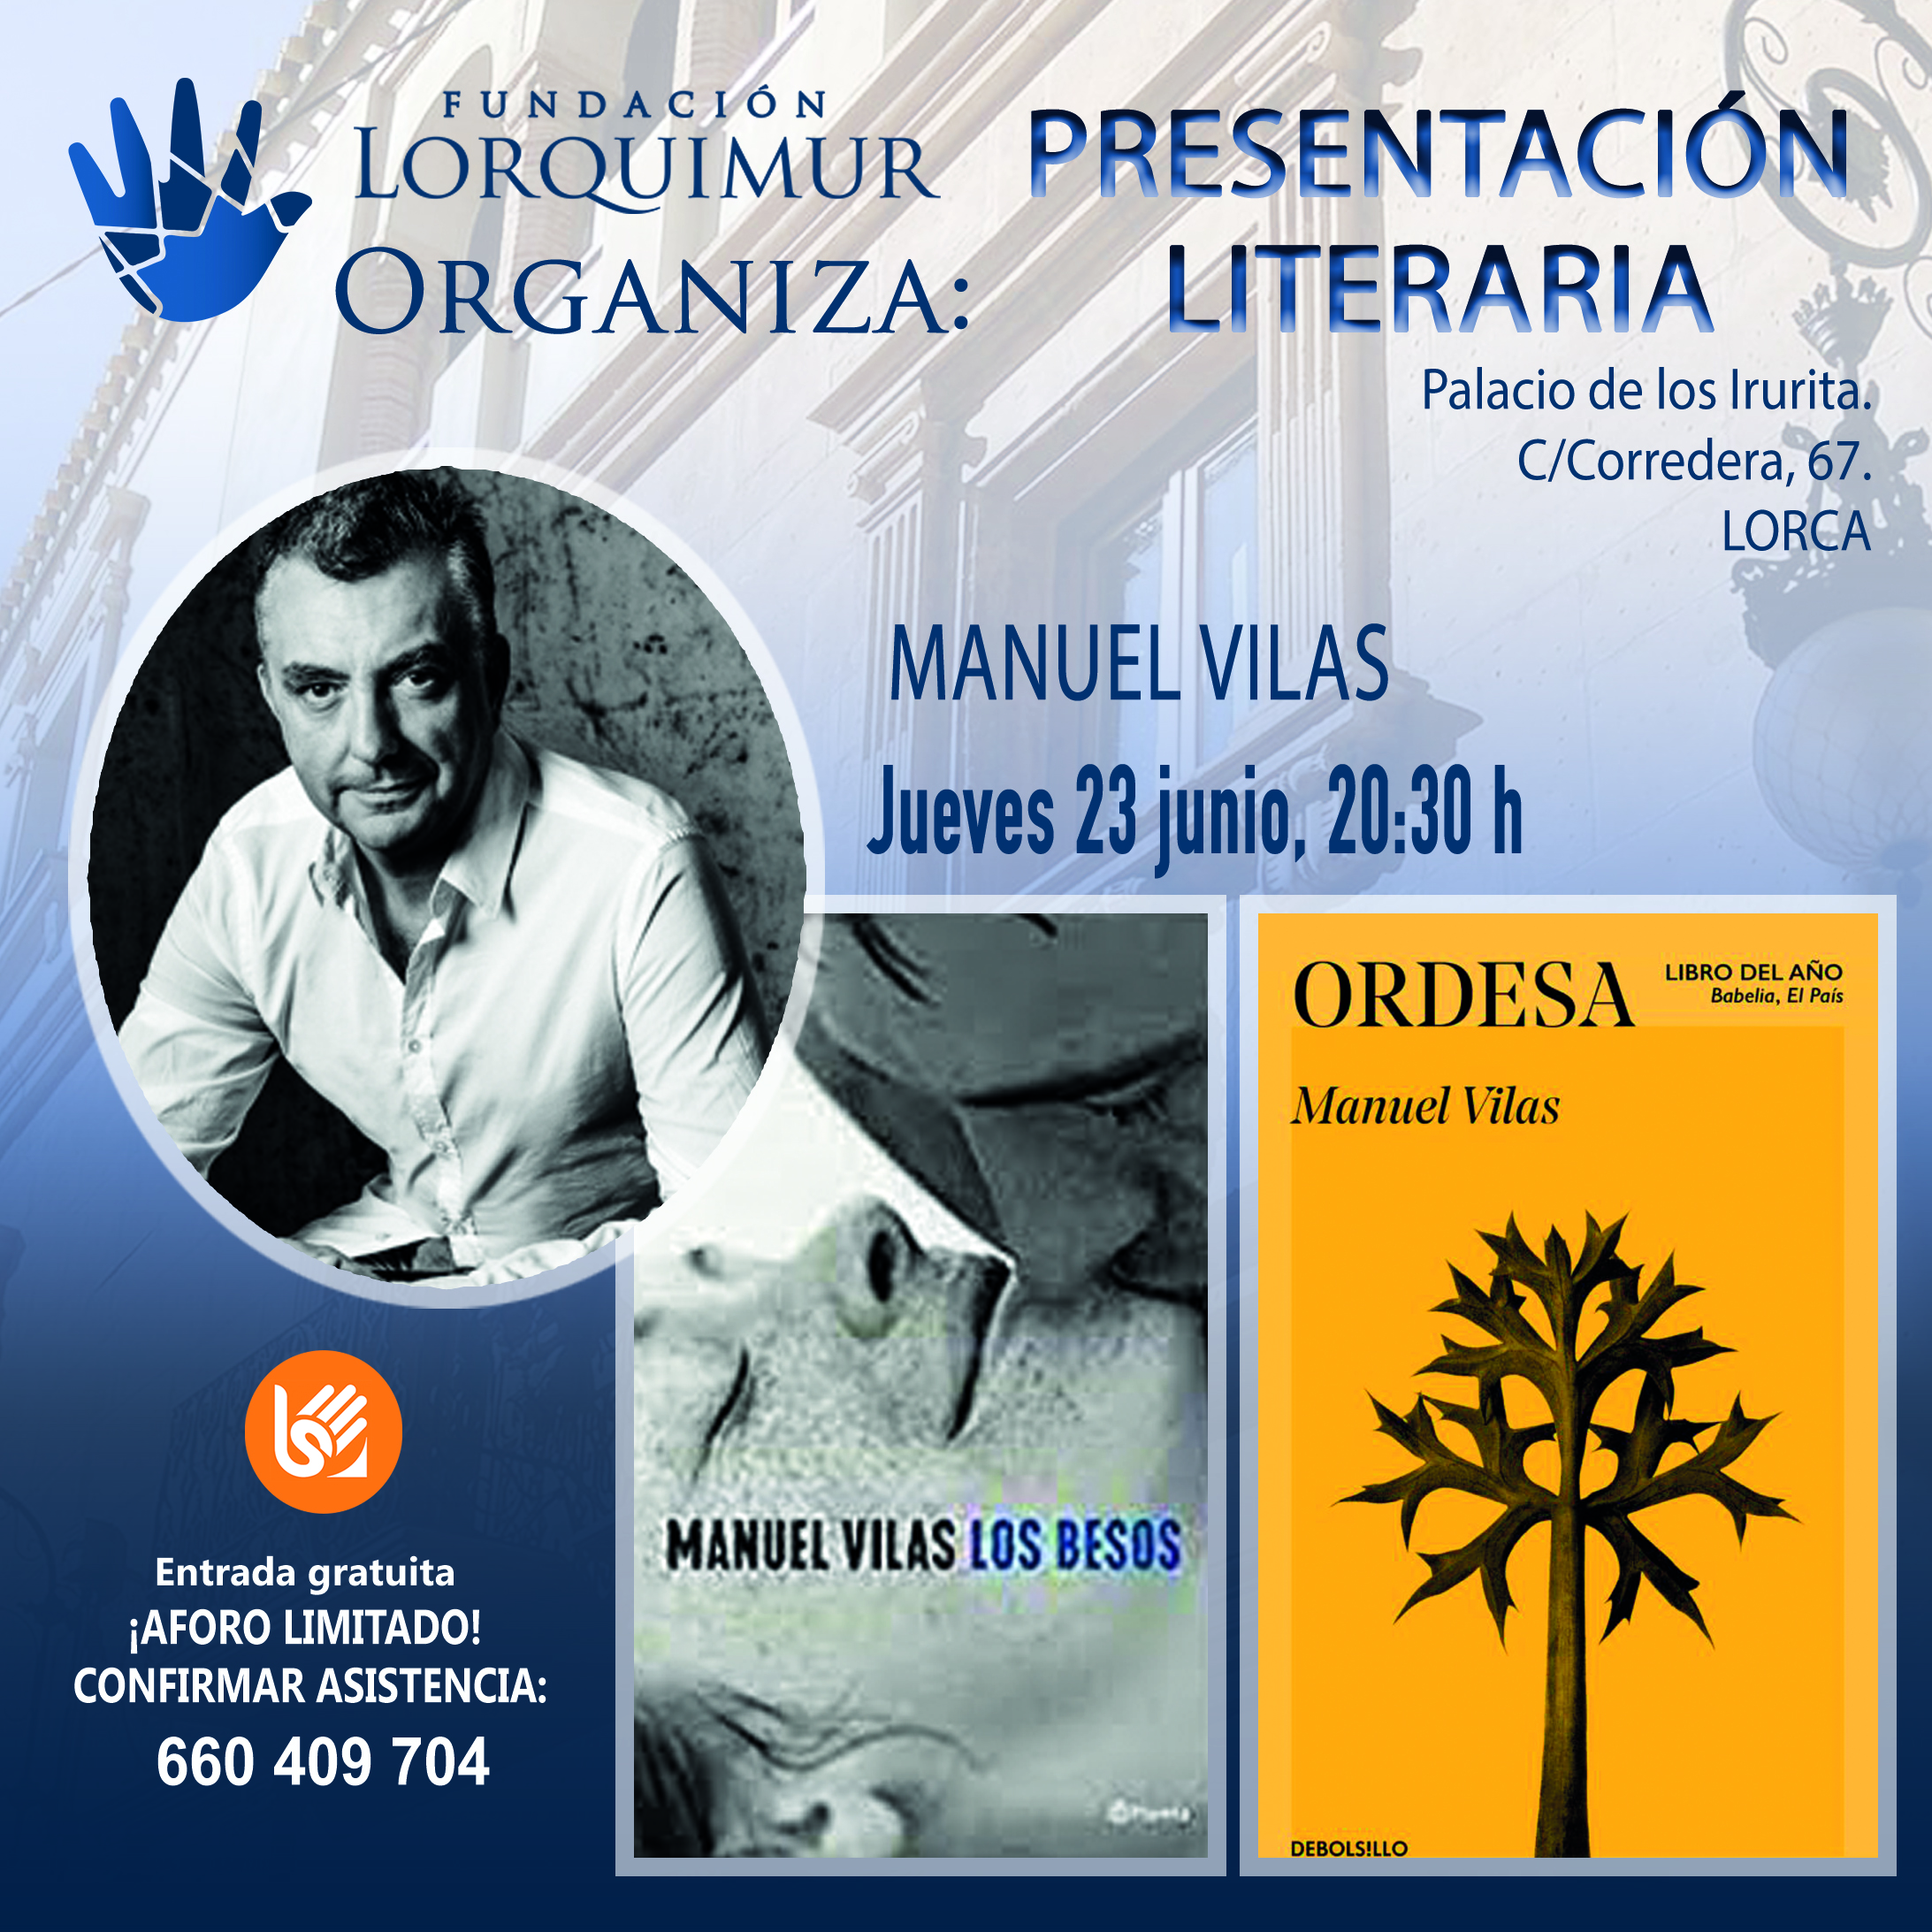 Presentación Literaria Manuel Vilas